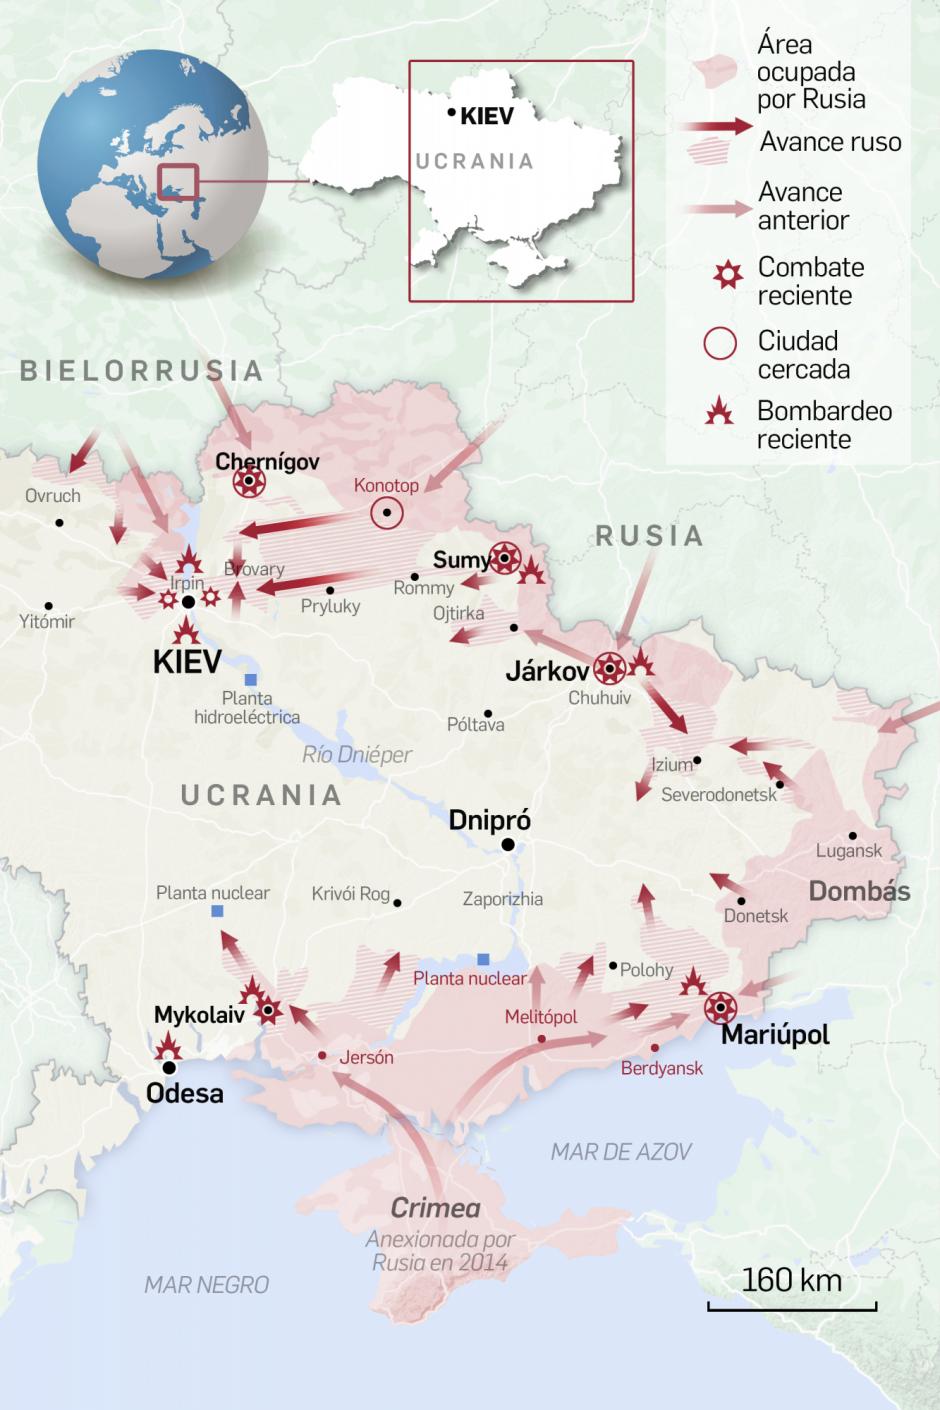 Guerra Rusia Ucrania Los Mapas Y Gr Ficos Que Detallan La Invasi N Rusa De Ucrania